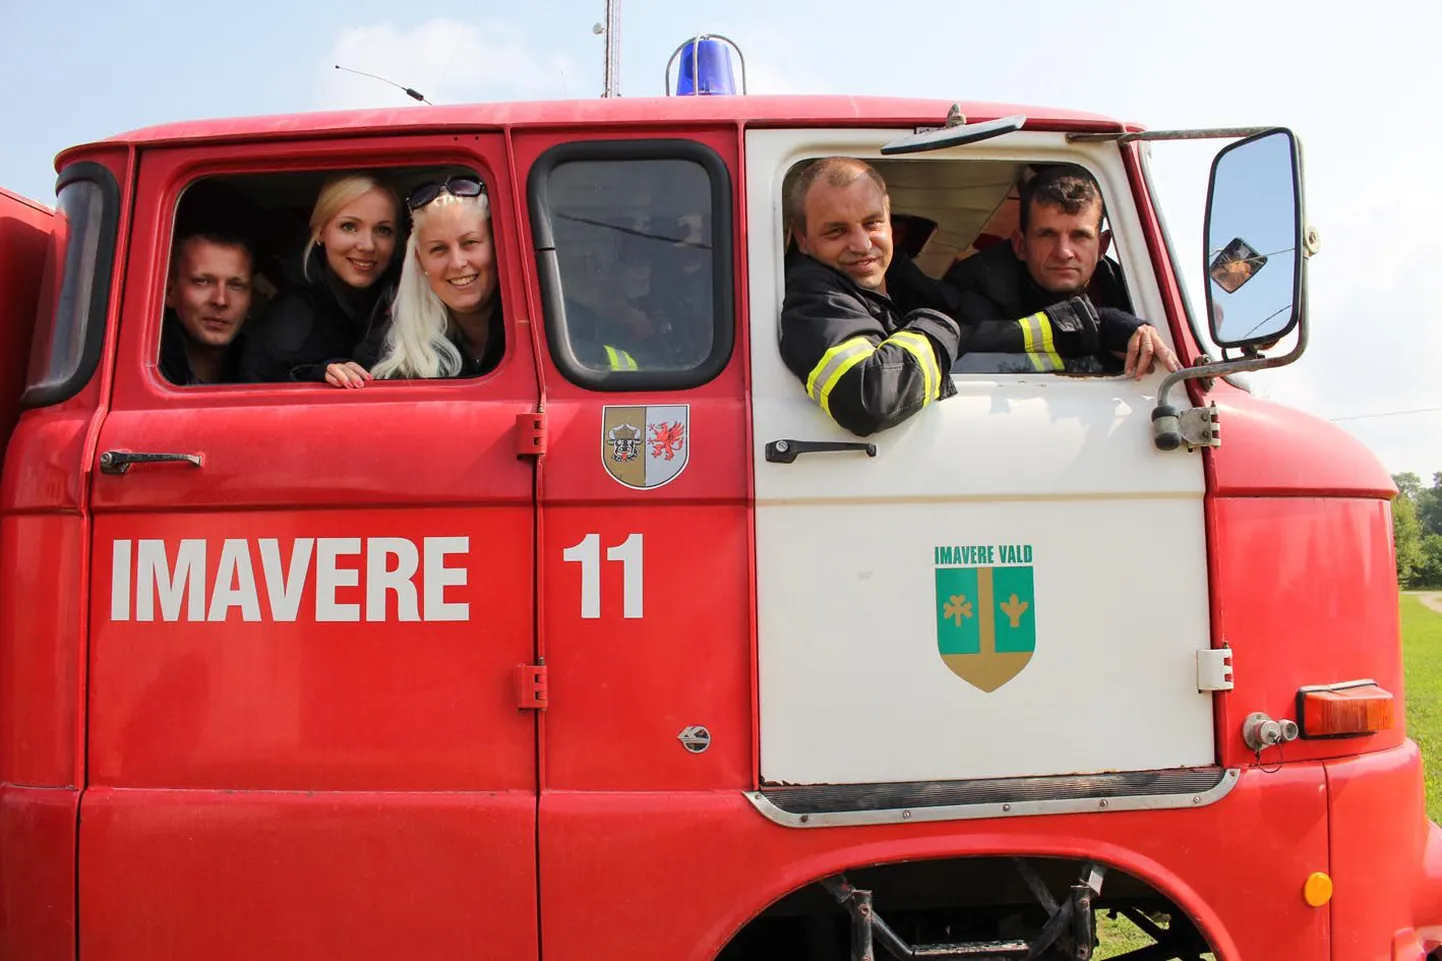 Imavere vabatahtliku päästekomando liikmed Evald Tõnisson (vasakult), Maarja Okas, Triin Tõnisson, Veiko Tamm ja Rene Tamm on valmis väljakutset saades appi ruttama. Nagu Järvamaal kombeks, on ka nende kümneliikmelises pundis 20% naisi (ehk kaks).